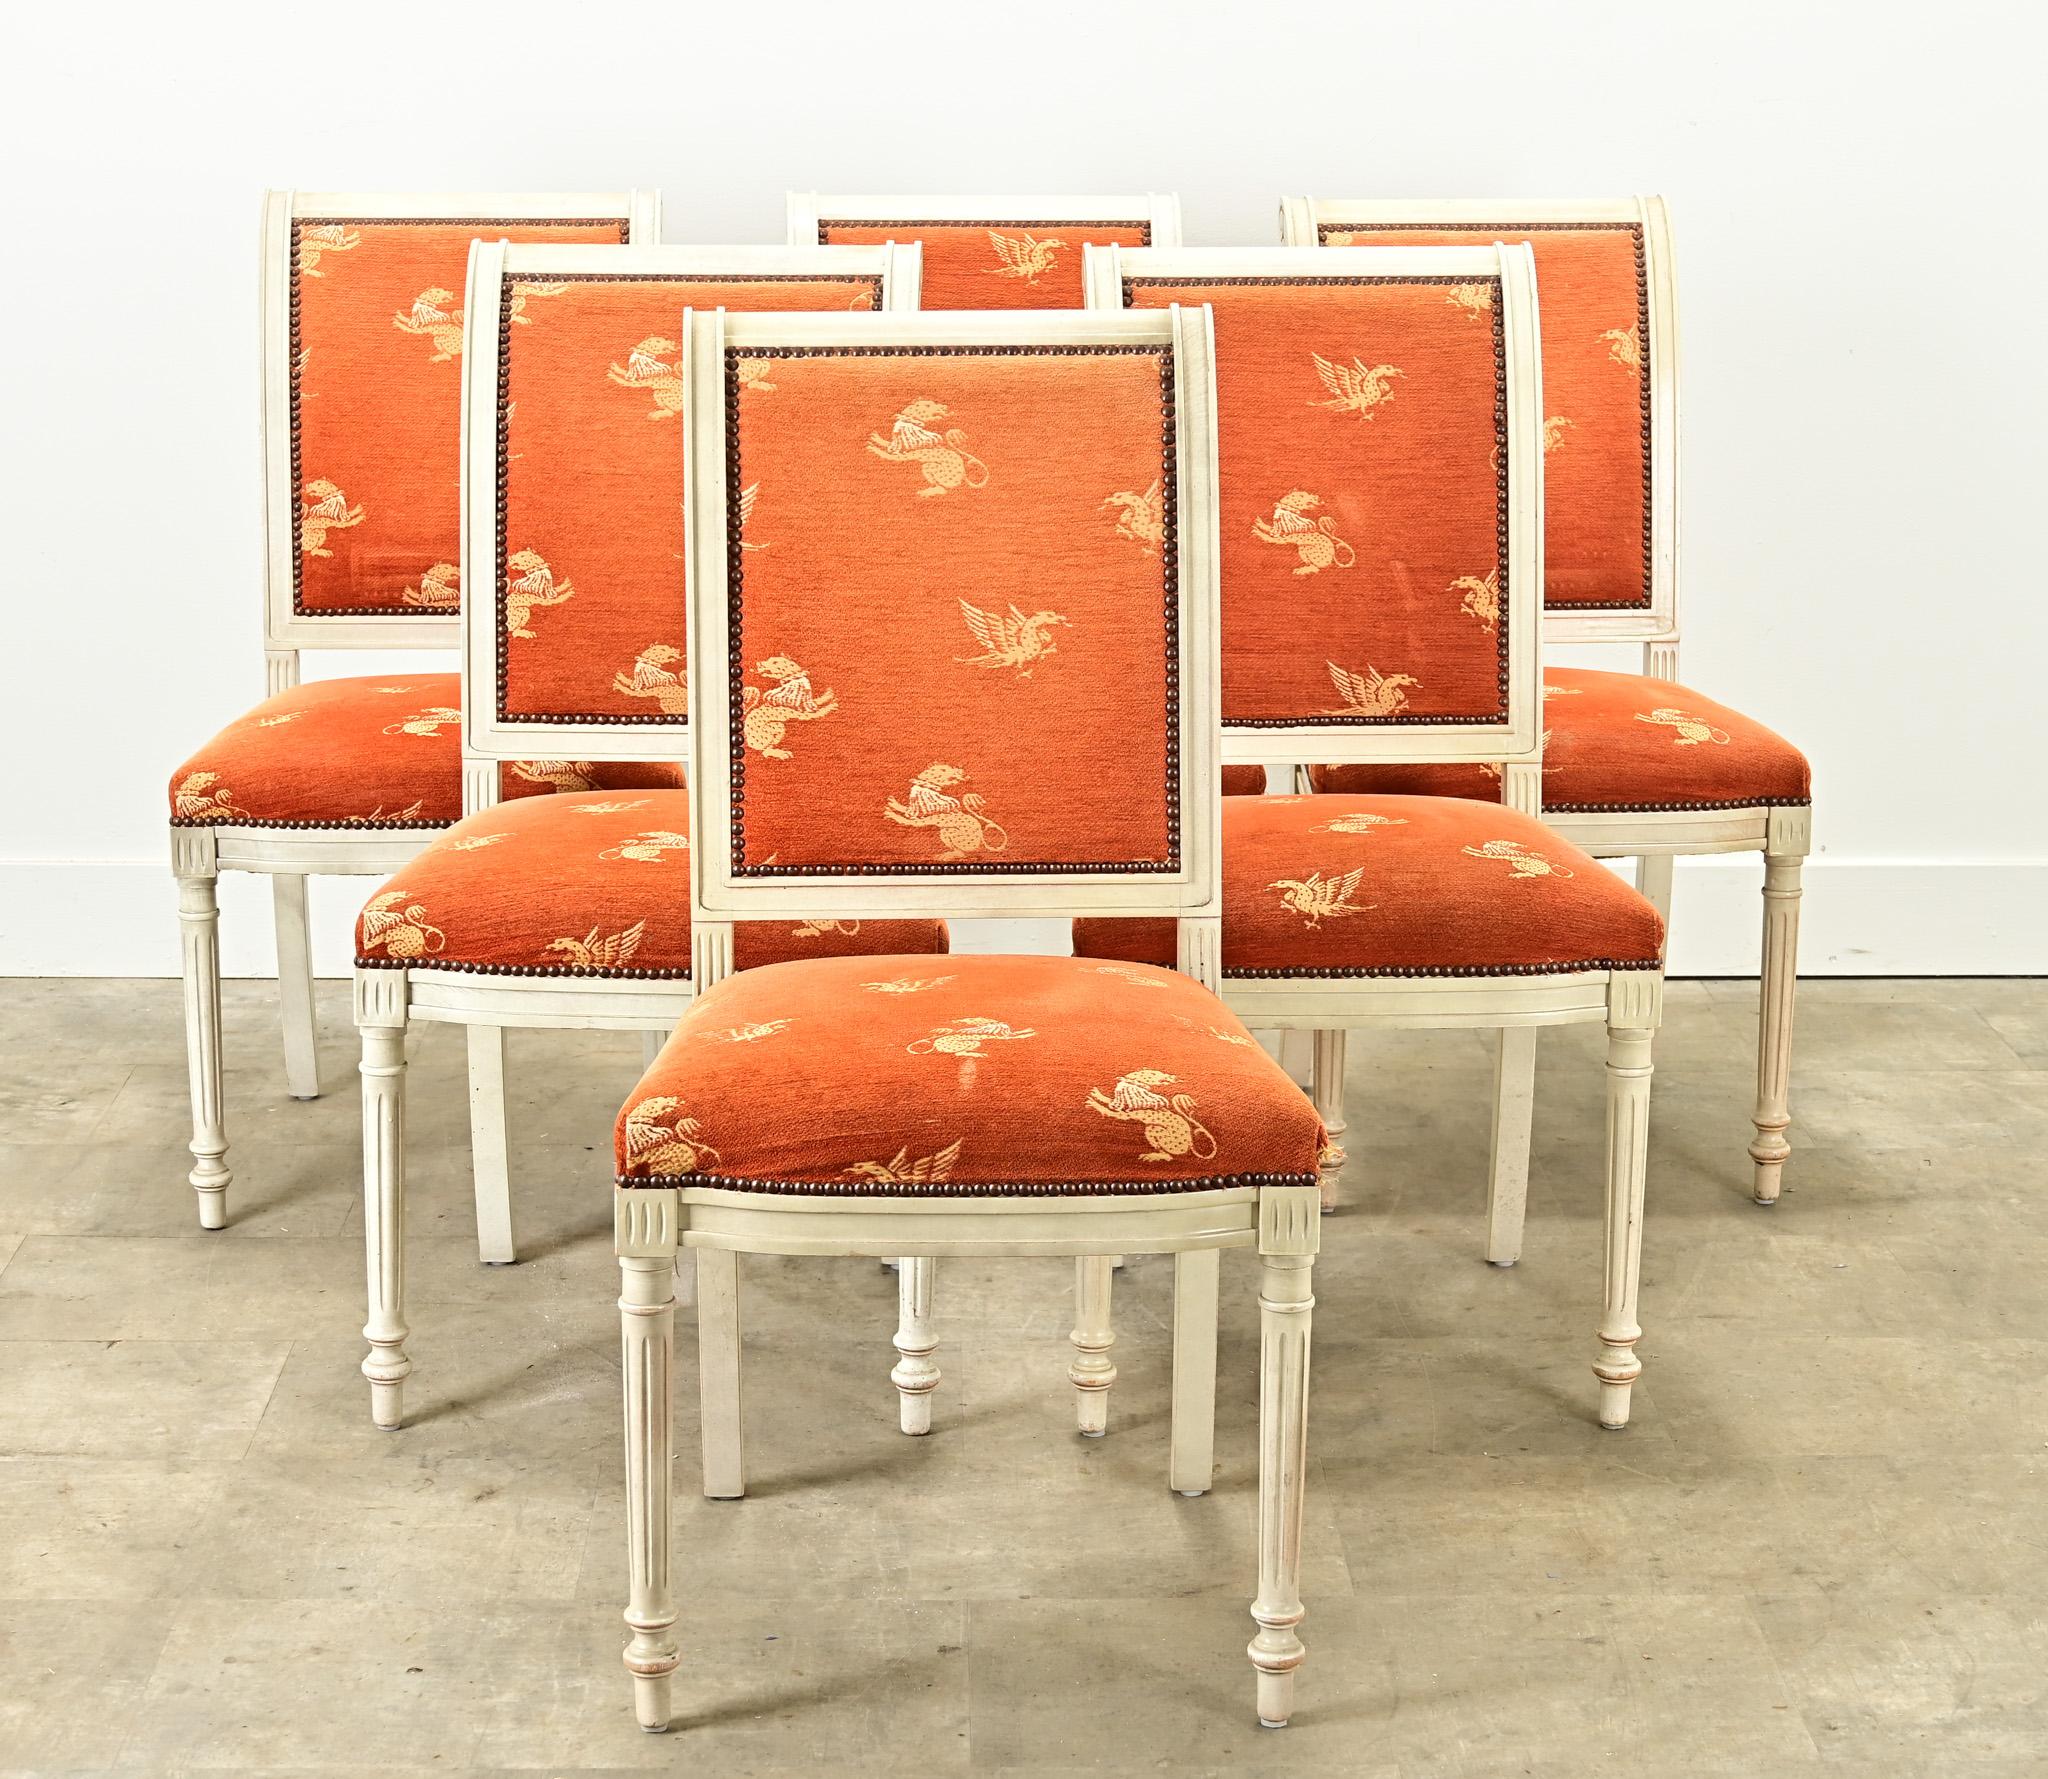 Ensemble vintage de six chaises de salle à manger rembourrées de style Louis XVI avec des cadres peints. Ces confortables chaises de salle à manger ont un tissu orange vif usé avec des motifs de griffons fixés par des têtes de clous en laiton. Les